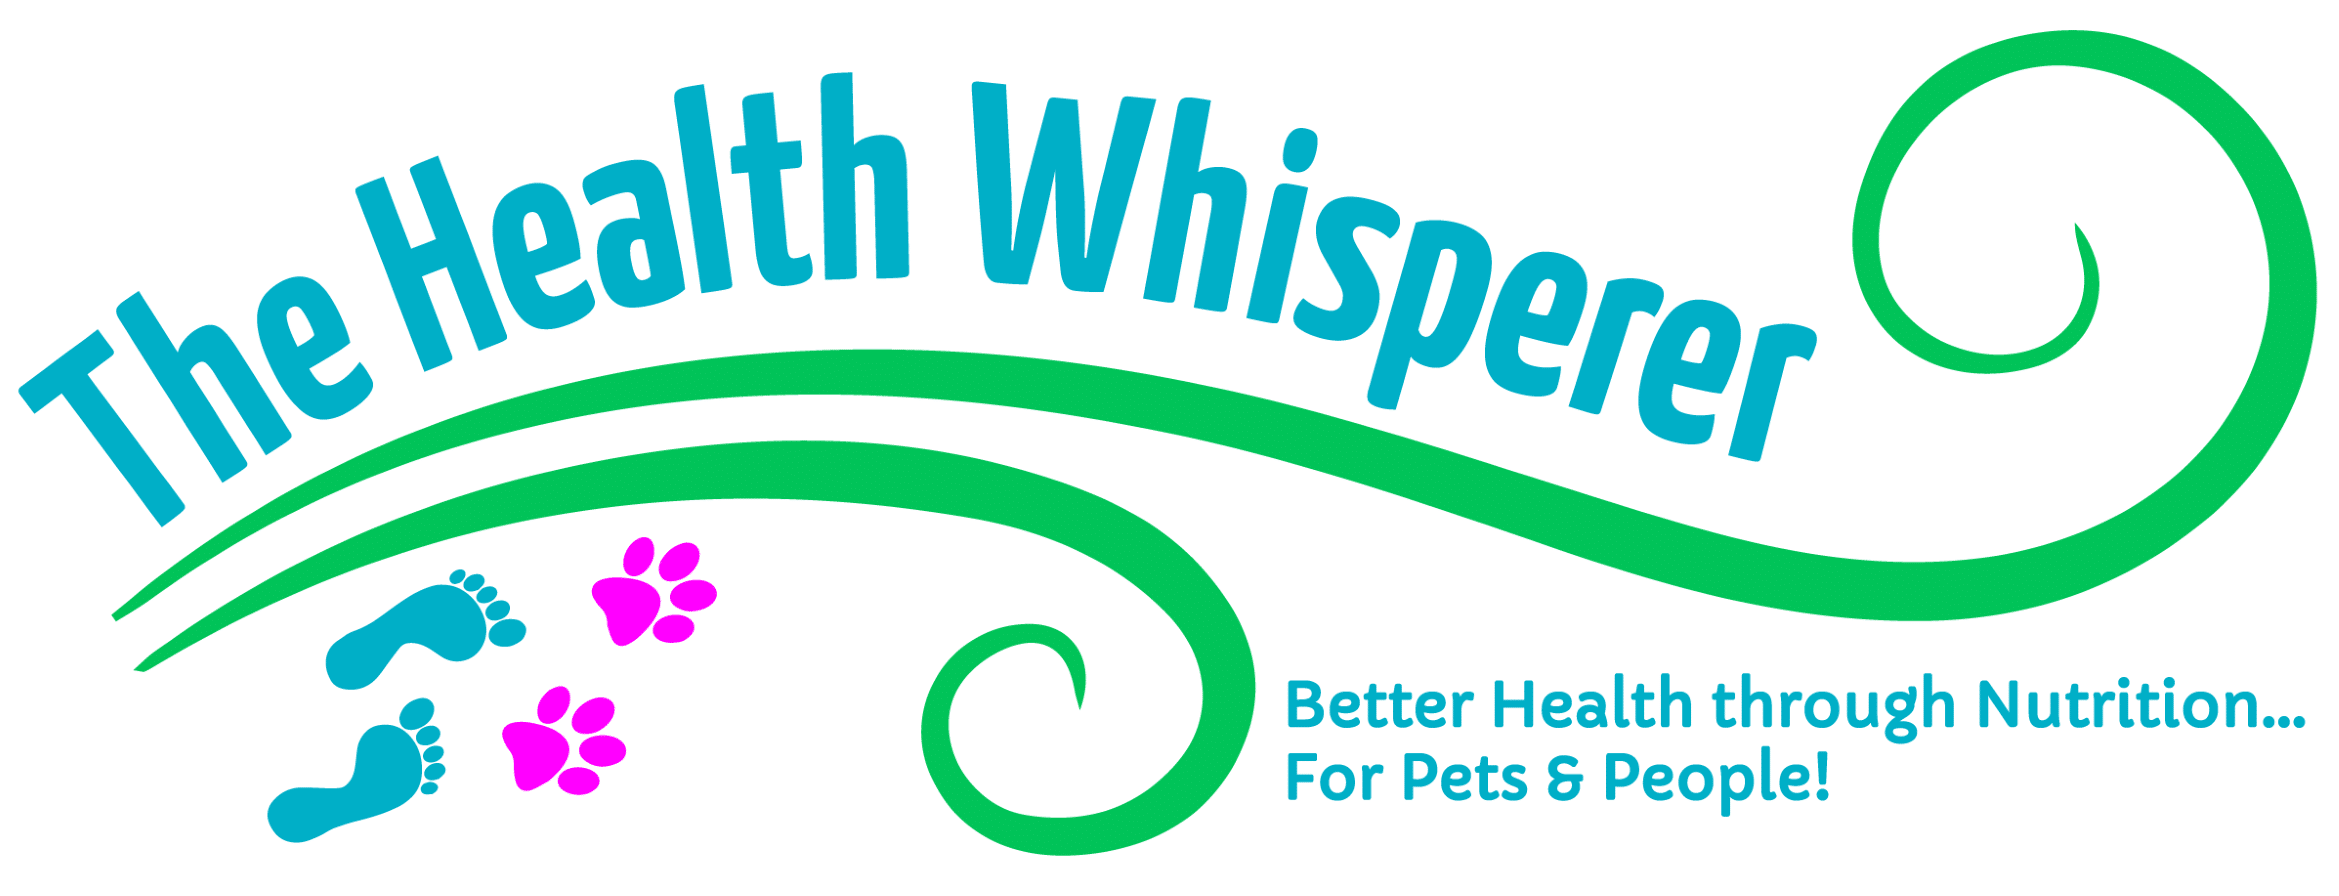 health whisperer